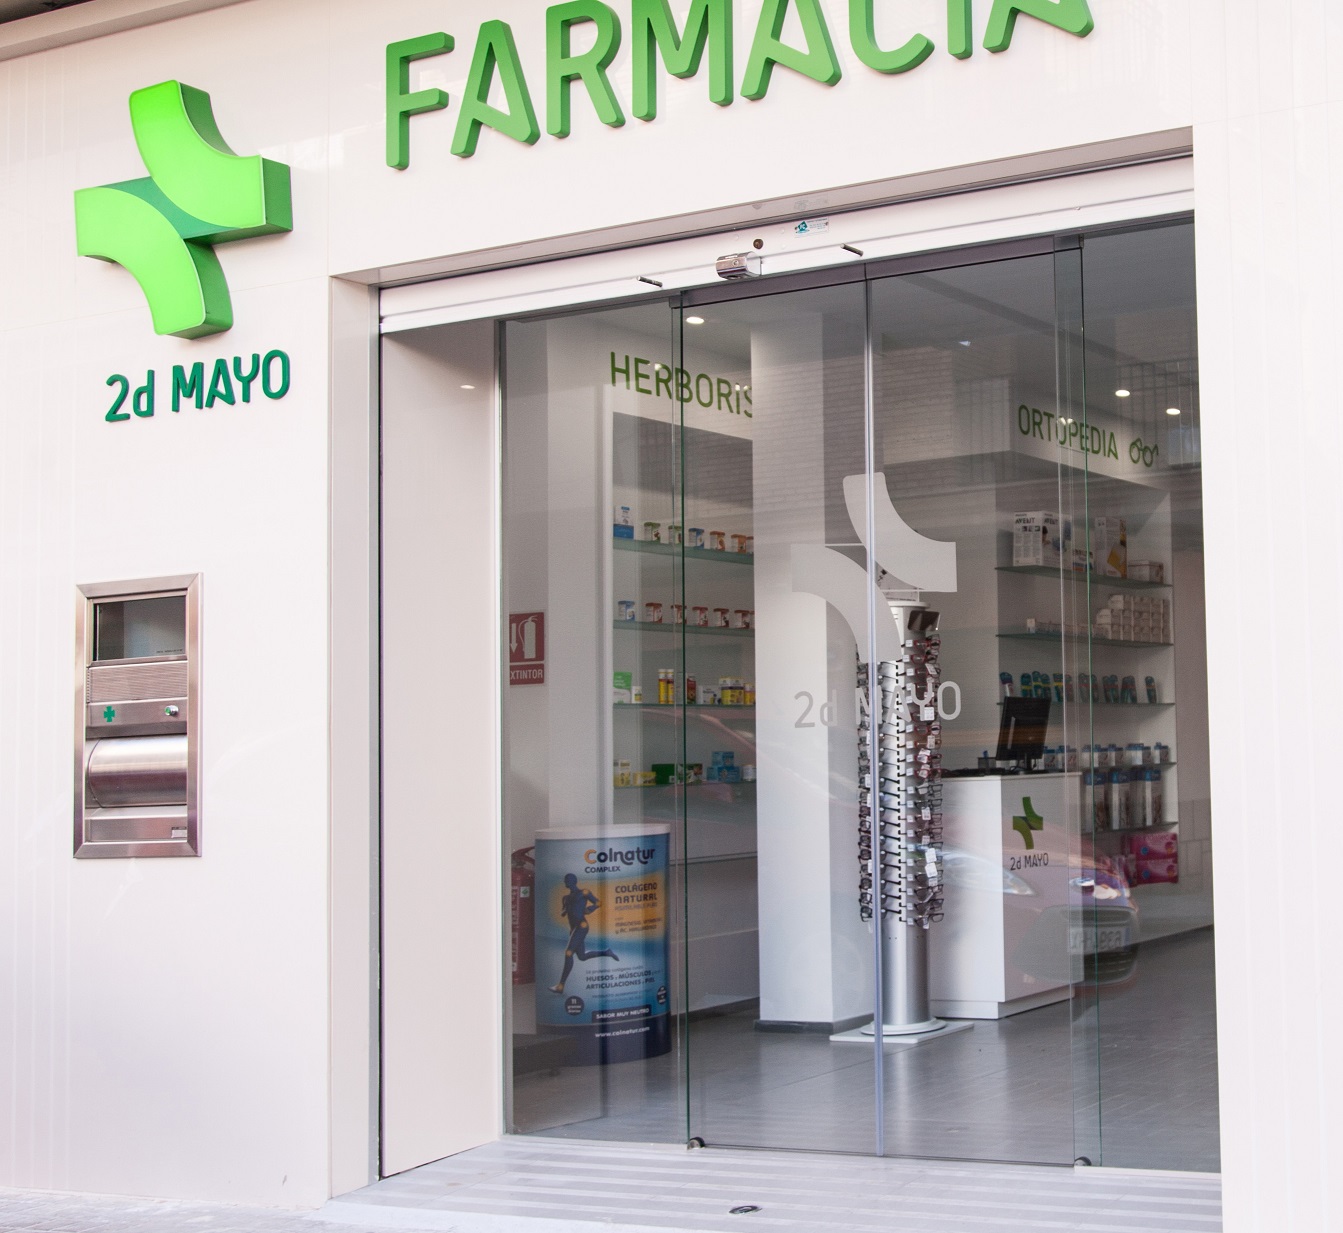 Farmacia1